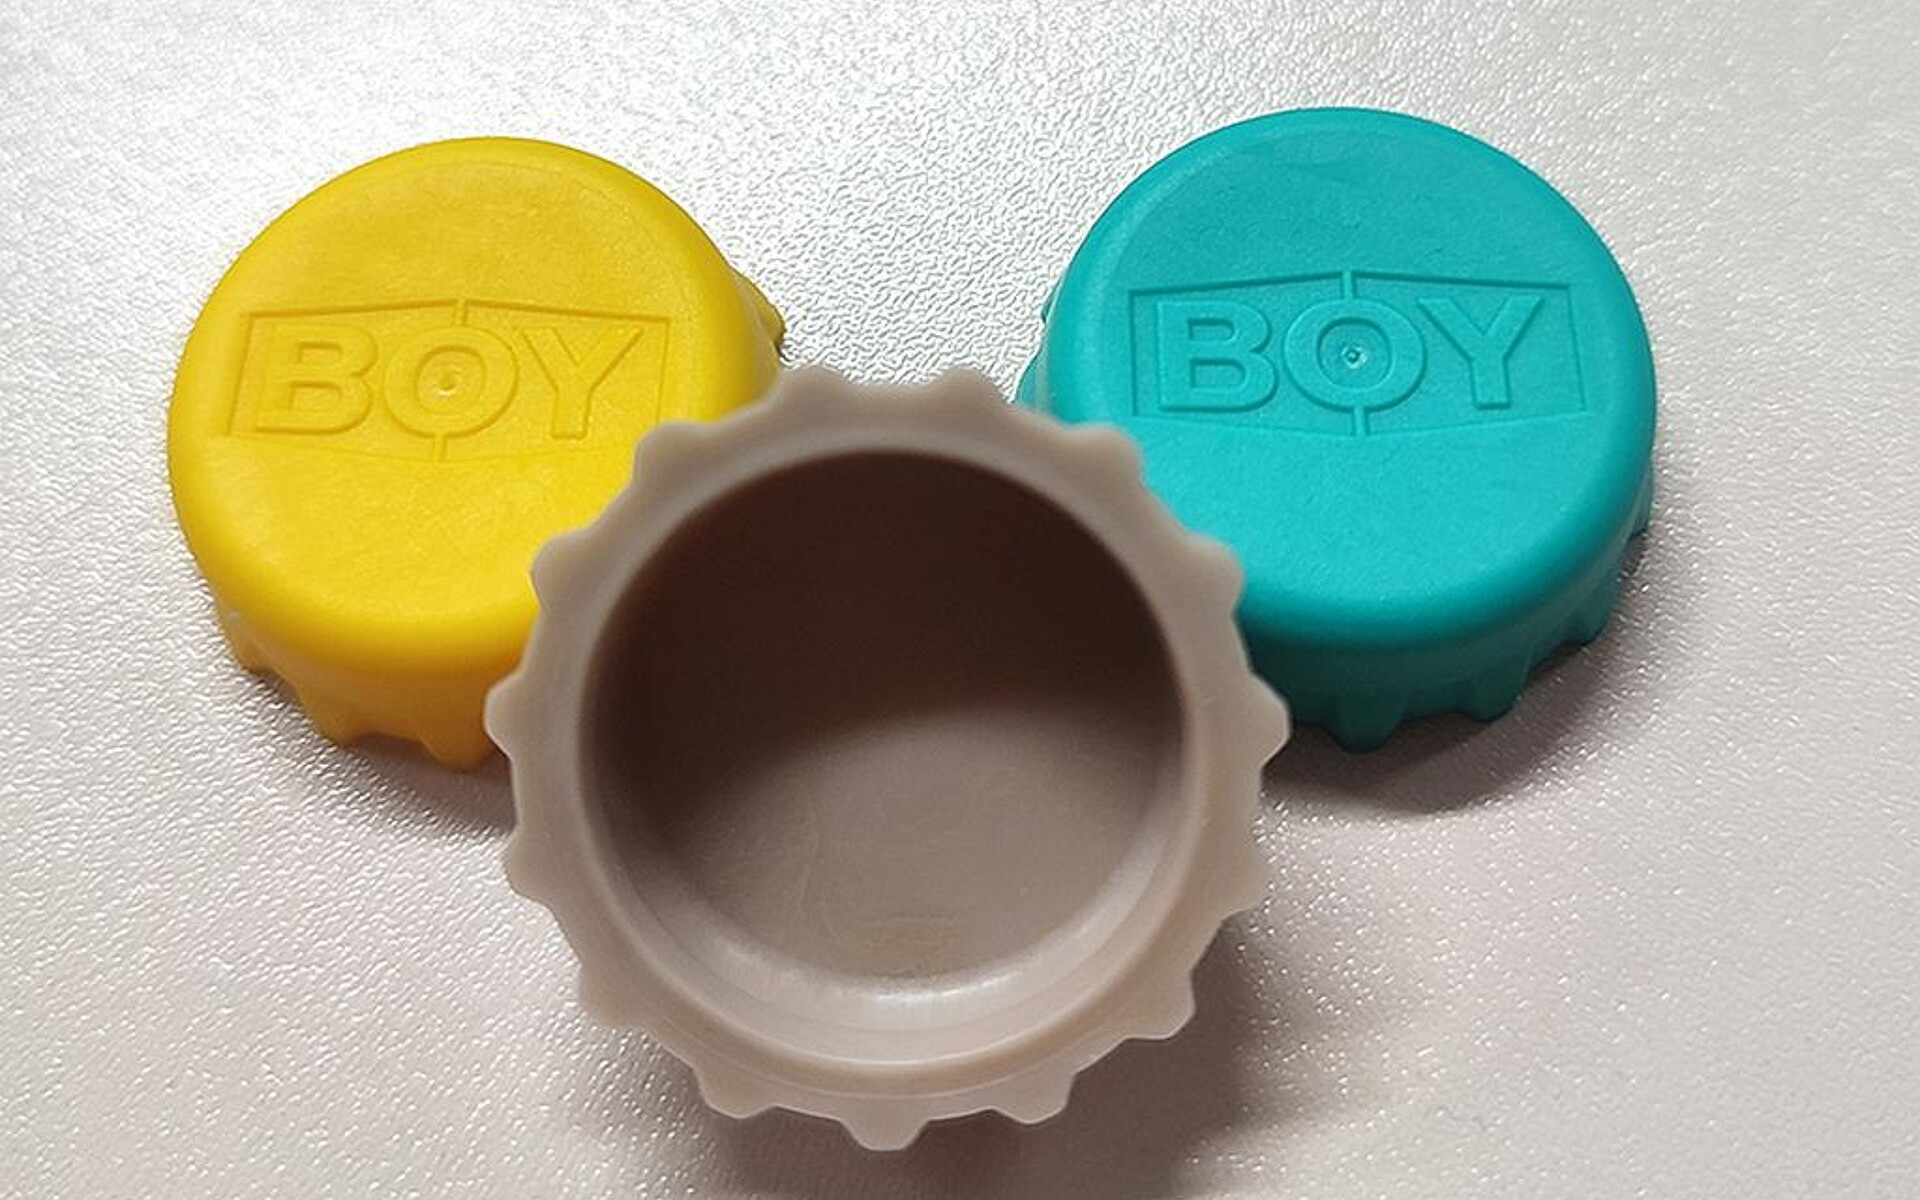 Während des Technologietags werden auf der Boy XS E Kronkorken aus TPE hergestellt. (Foto: Dr. Boy)